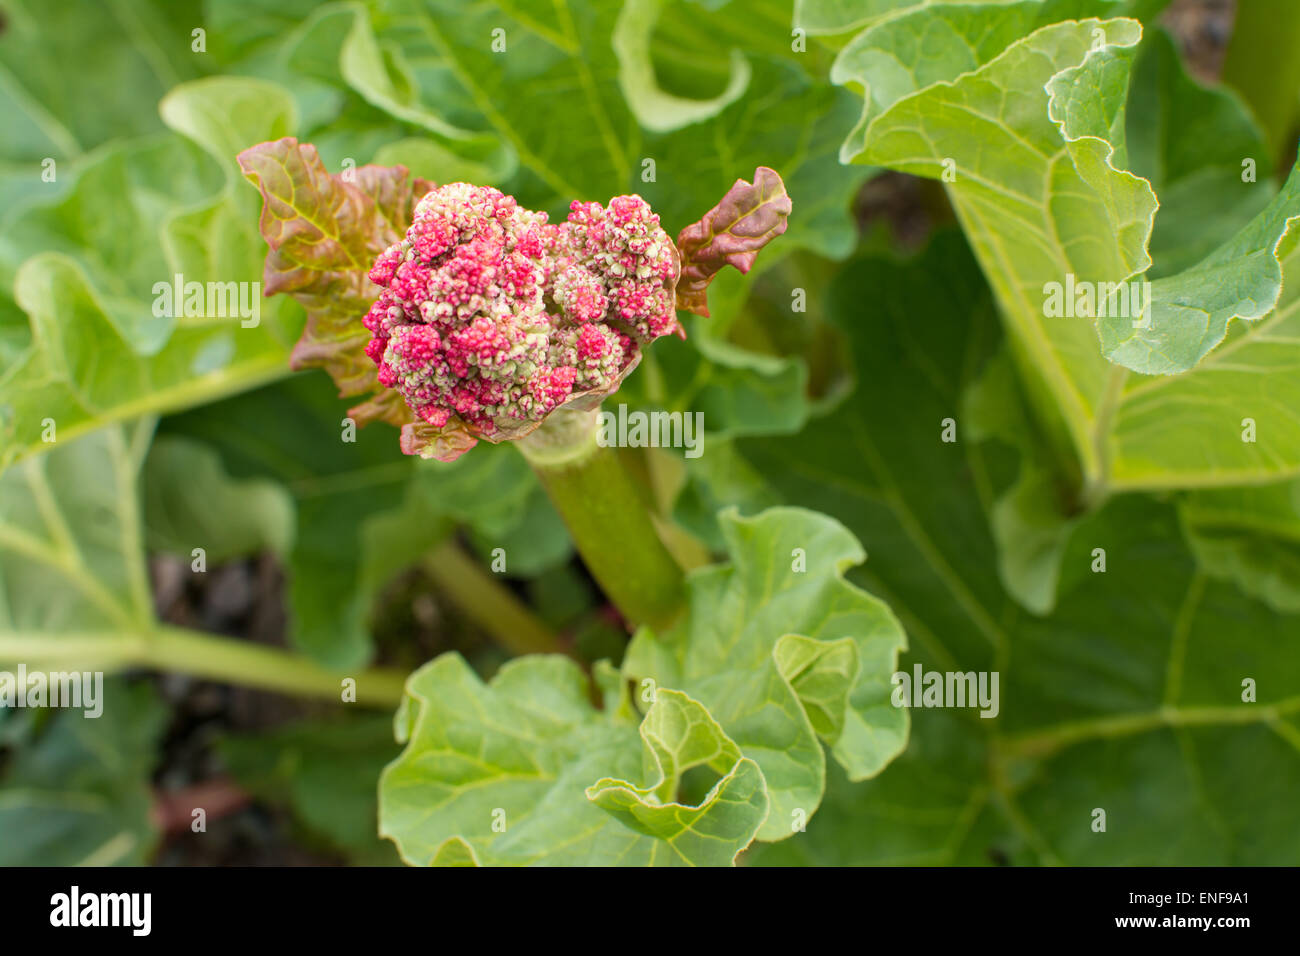 Blume auf Rhabarber (Rheum X hybridum) Pflanze, die "verschraubt hat" Stockfoto